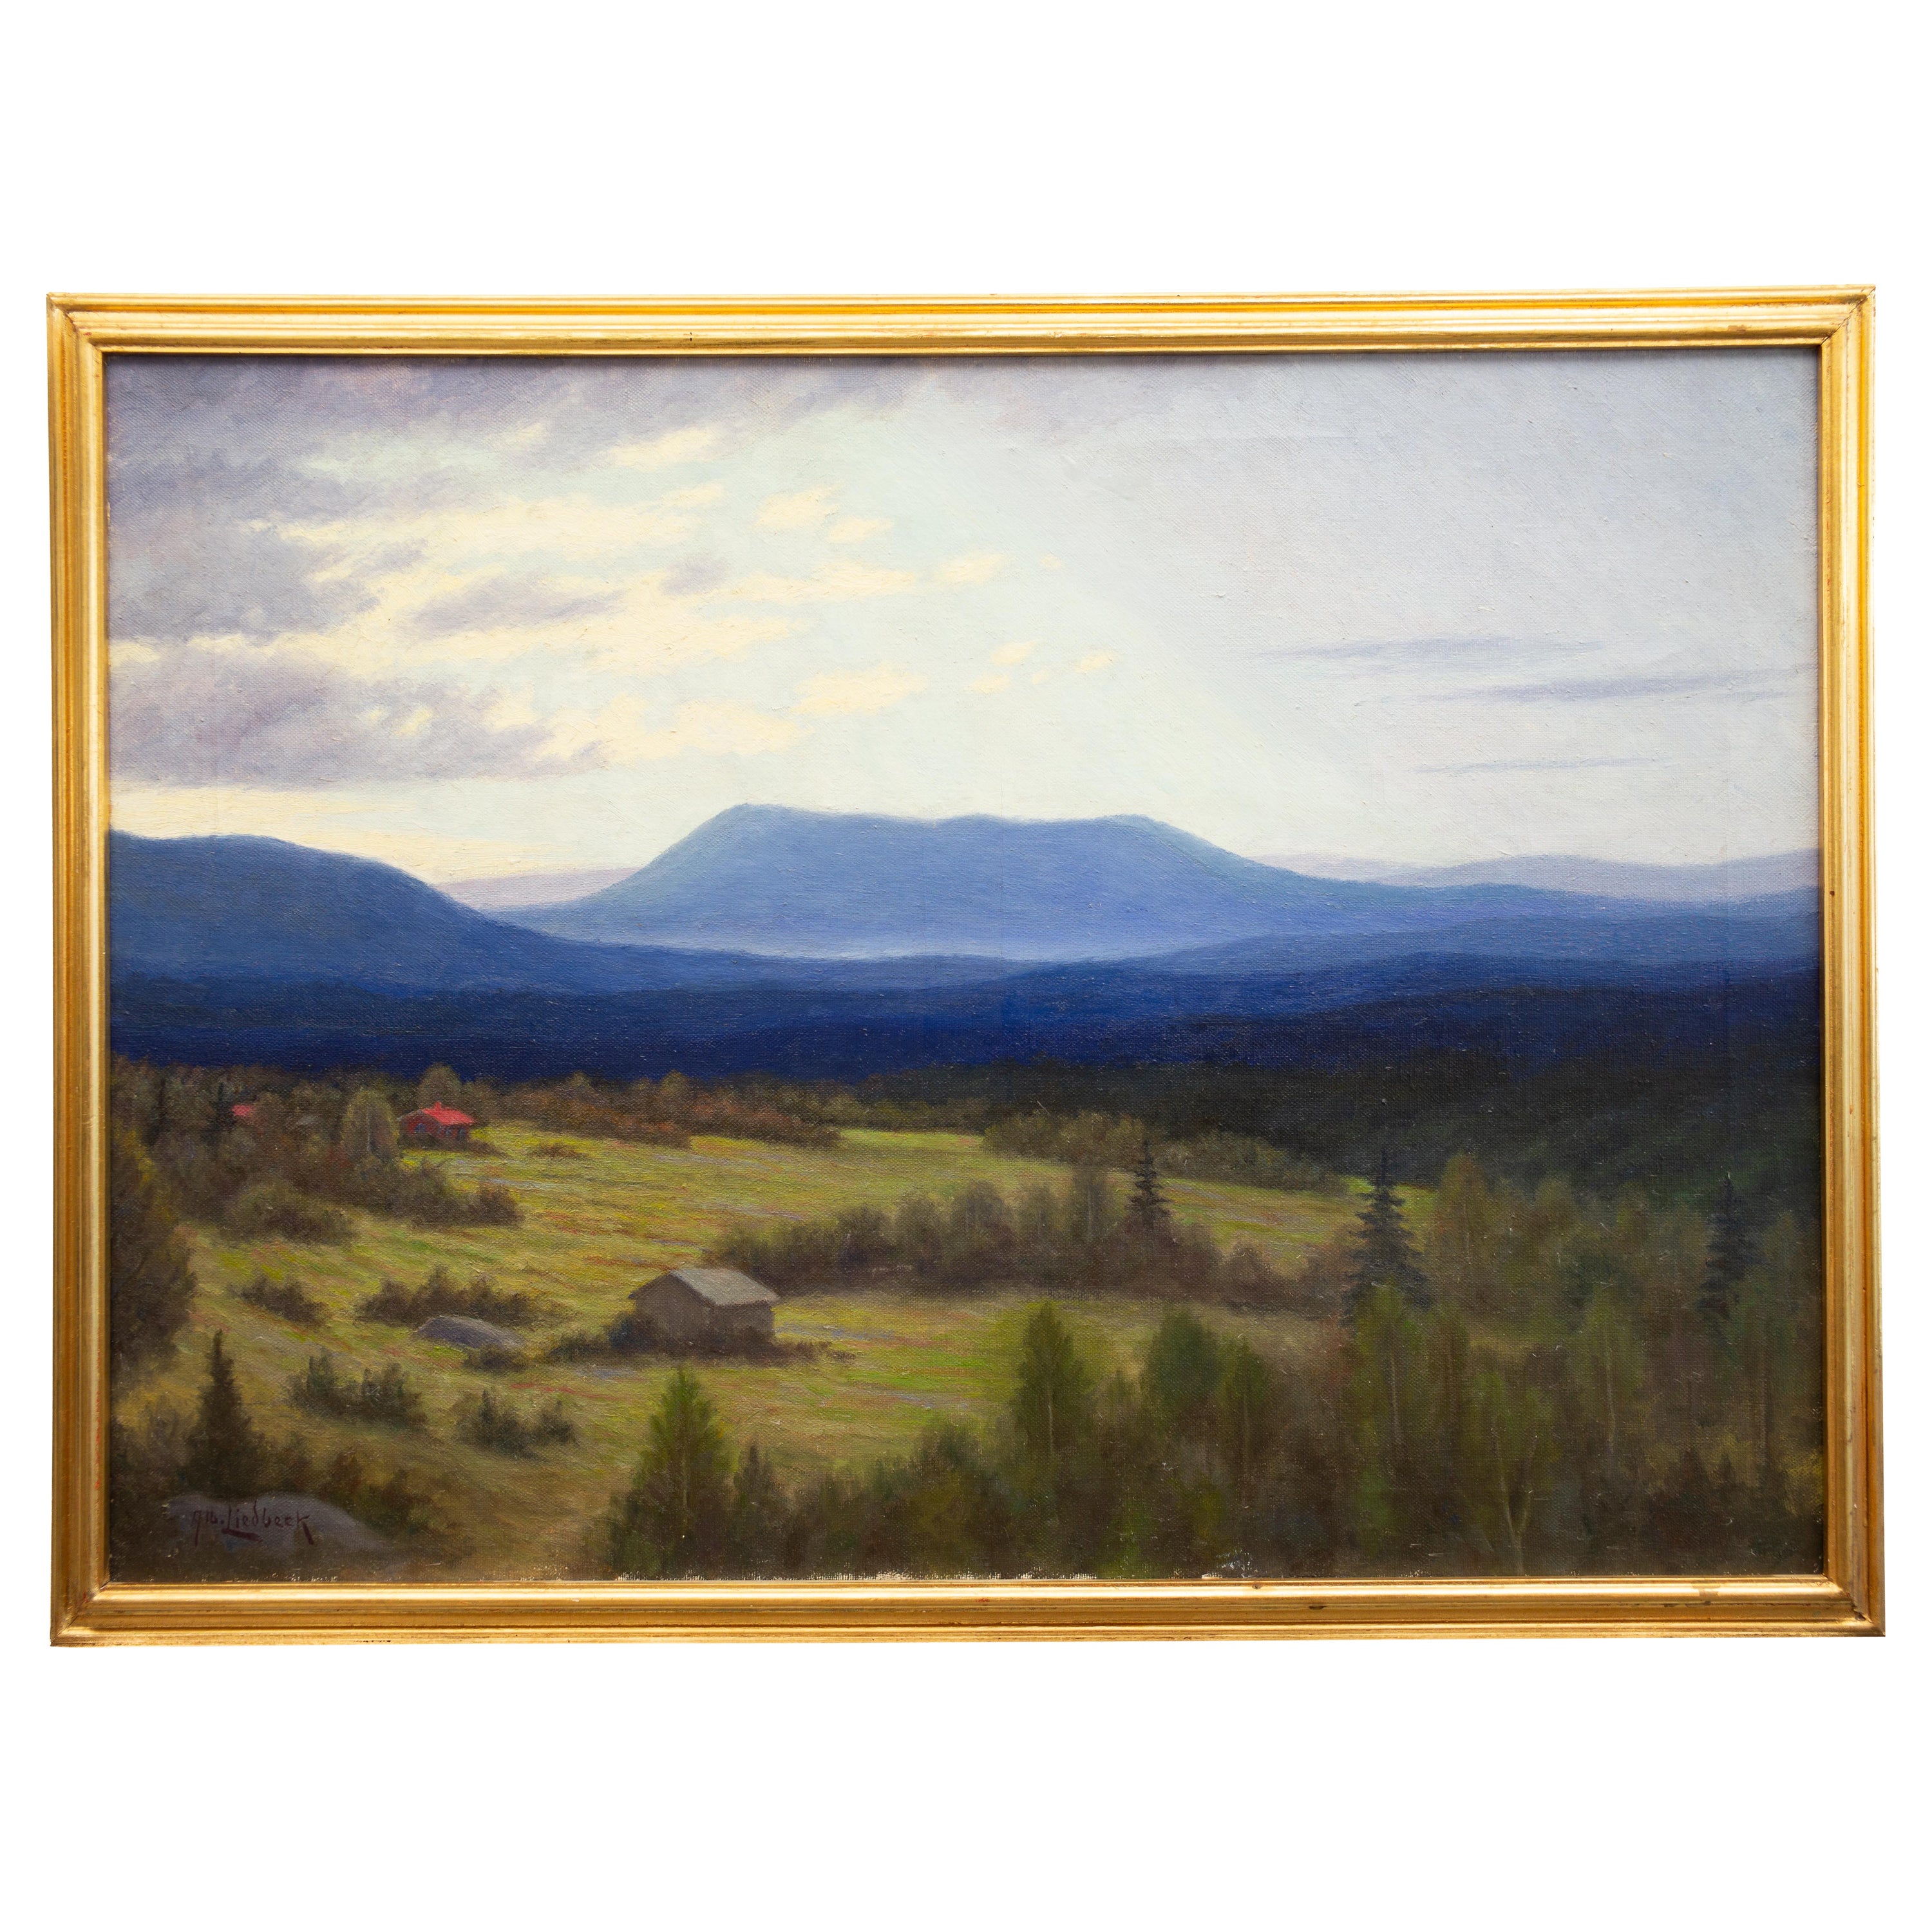 Albert Liedbeck (1881 - 1955) Schweden

Landschaft mit blauen Bergen

Öl auf Leinwand
Maße der Leinwand 22,04 x 30,70 Zoll (56 x 78 cm)
Rahmen 24,40 x 31,67 Zoll (62 x 83 cm)
unterzeichnet Alb. Liedbeck 

Carl Albert Liedbeck, wurde 1881 in